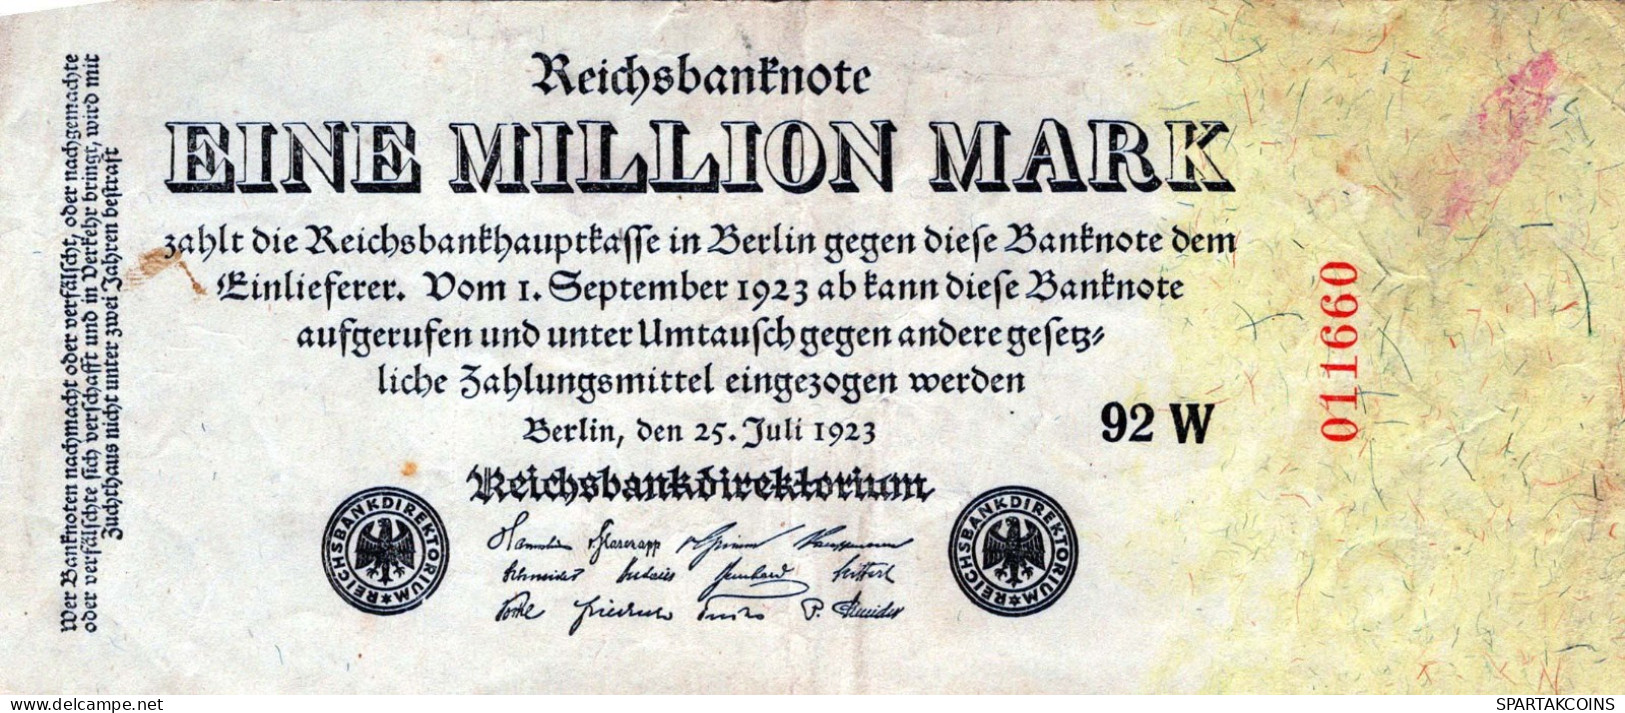 1 MILLION MARK 1923 Stadt BERLIN DEUTSCHLAND Papiergeld Banknote #PK802 - [11] Emissions Locales